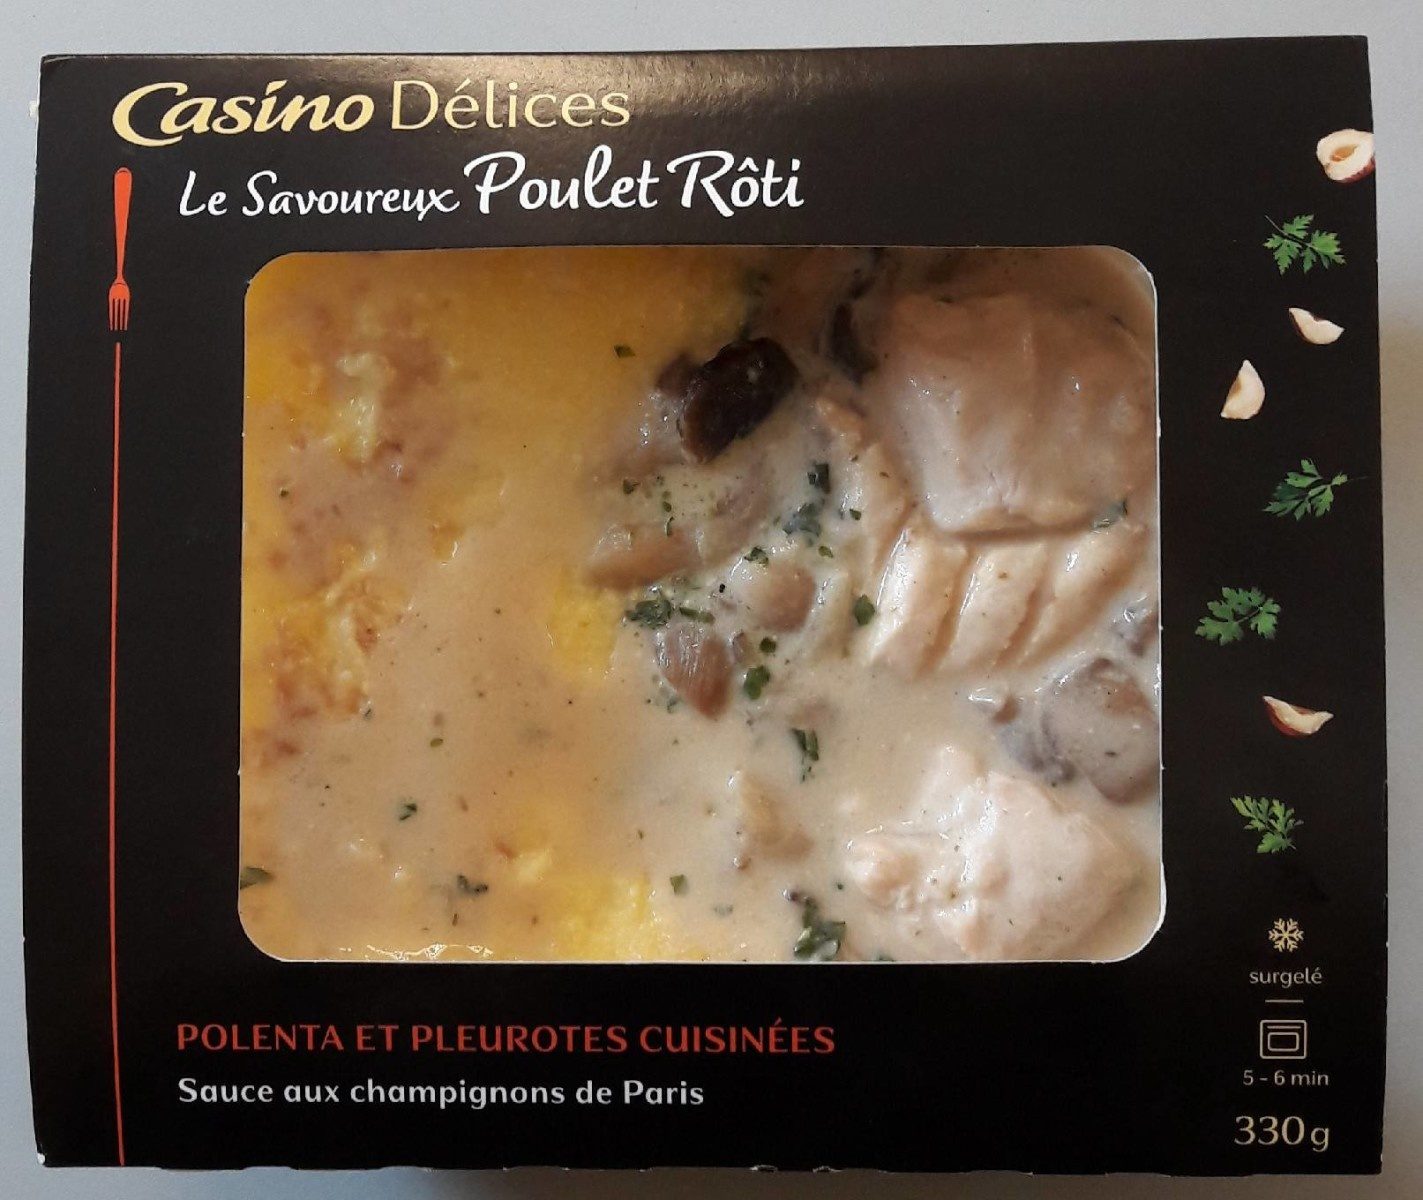 Le savoureux Poulet rôti polenta et pleurotes cuisinées - Sauce aux champignons de Paris - Produit - fr